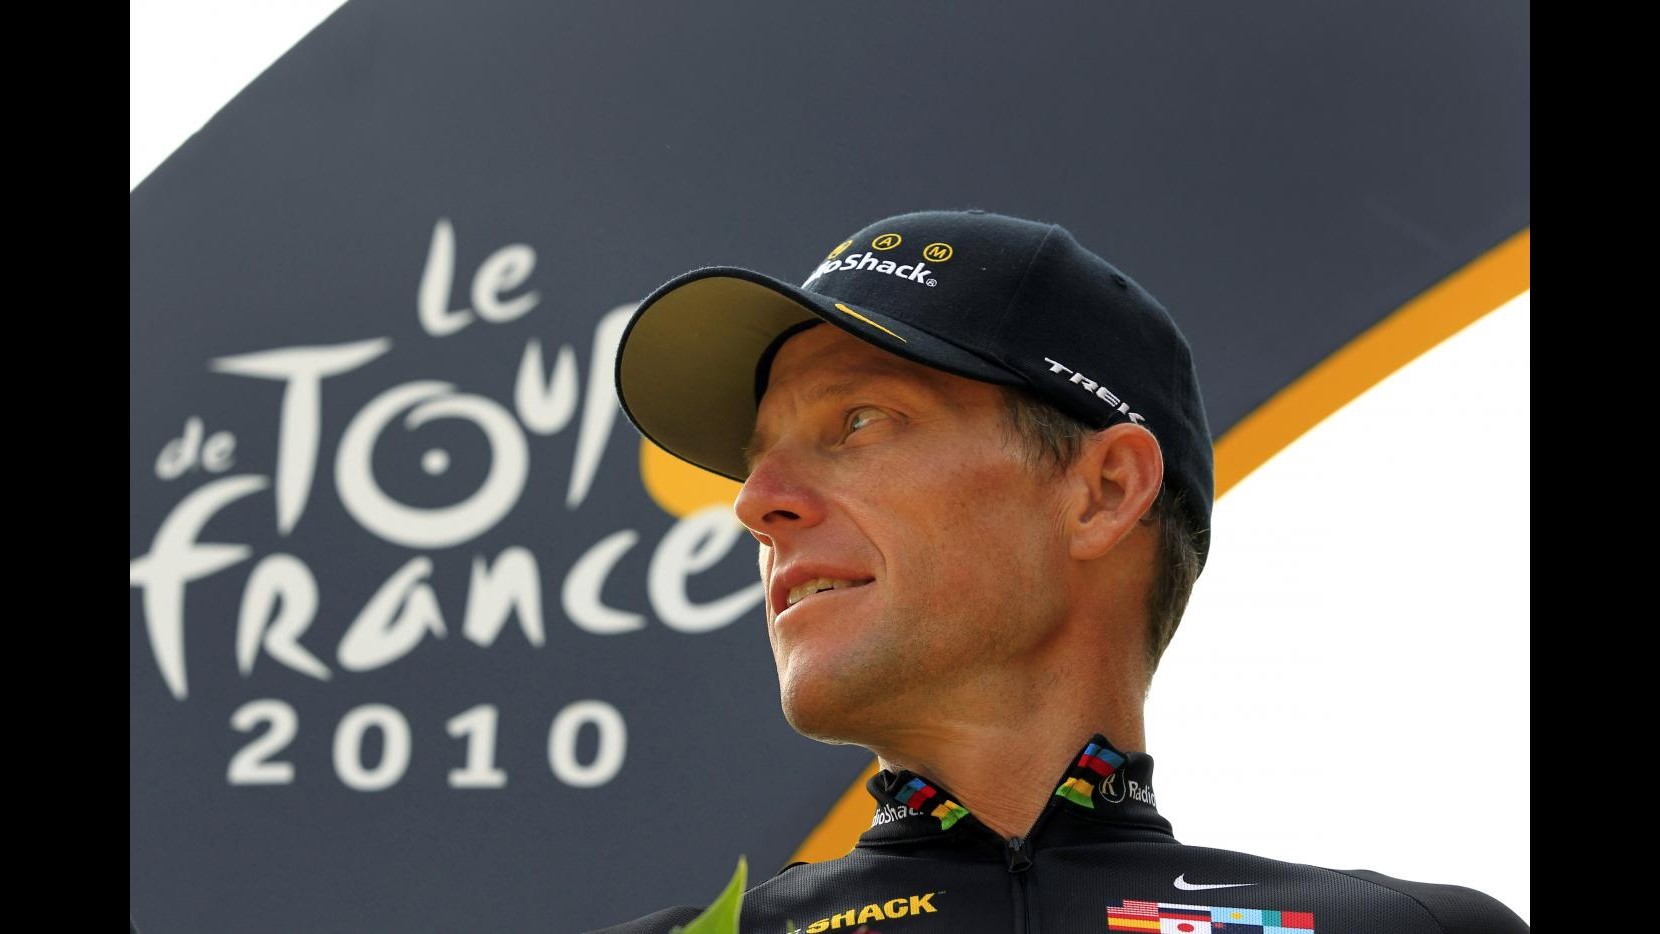 Uci: Tour de France revocati ad Armstrong non saranno riassegnati